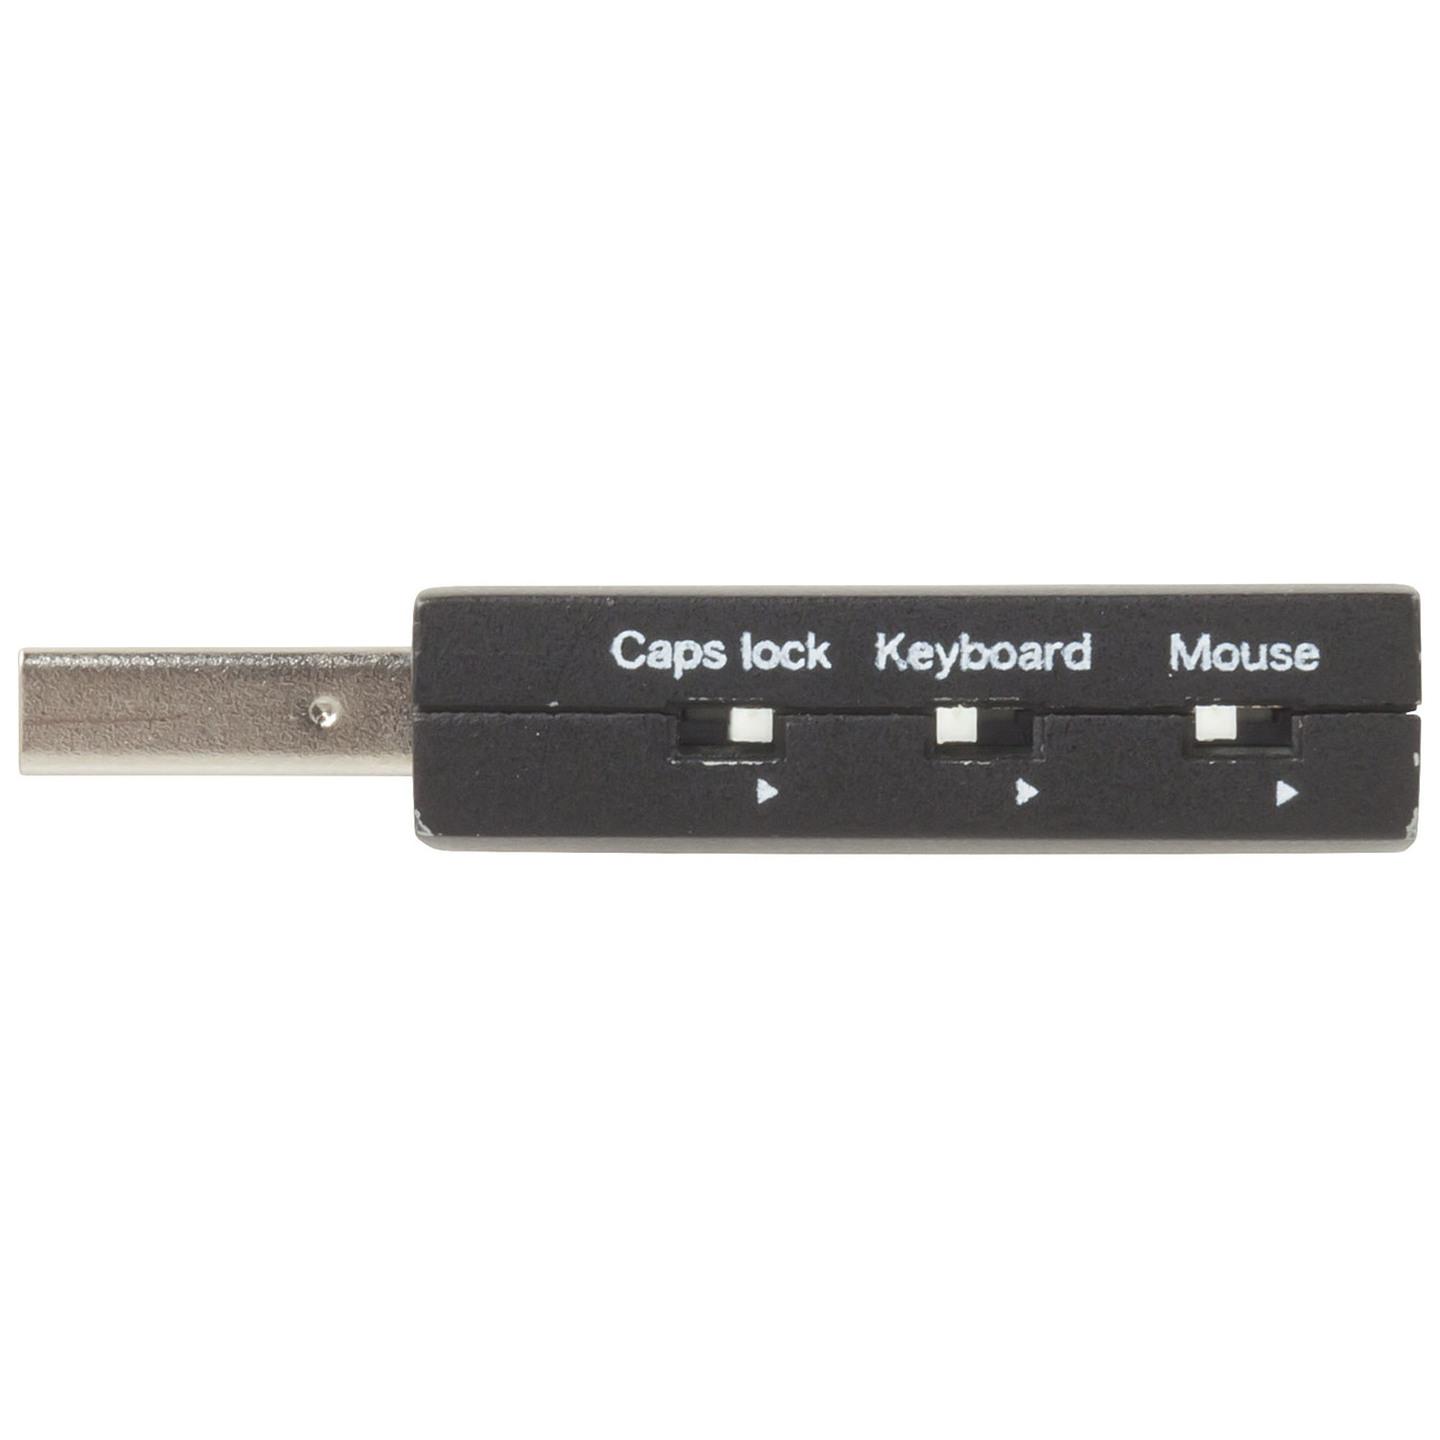 USB Keystroke Pranker